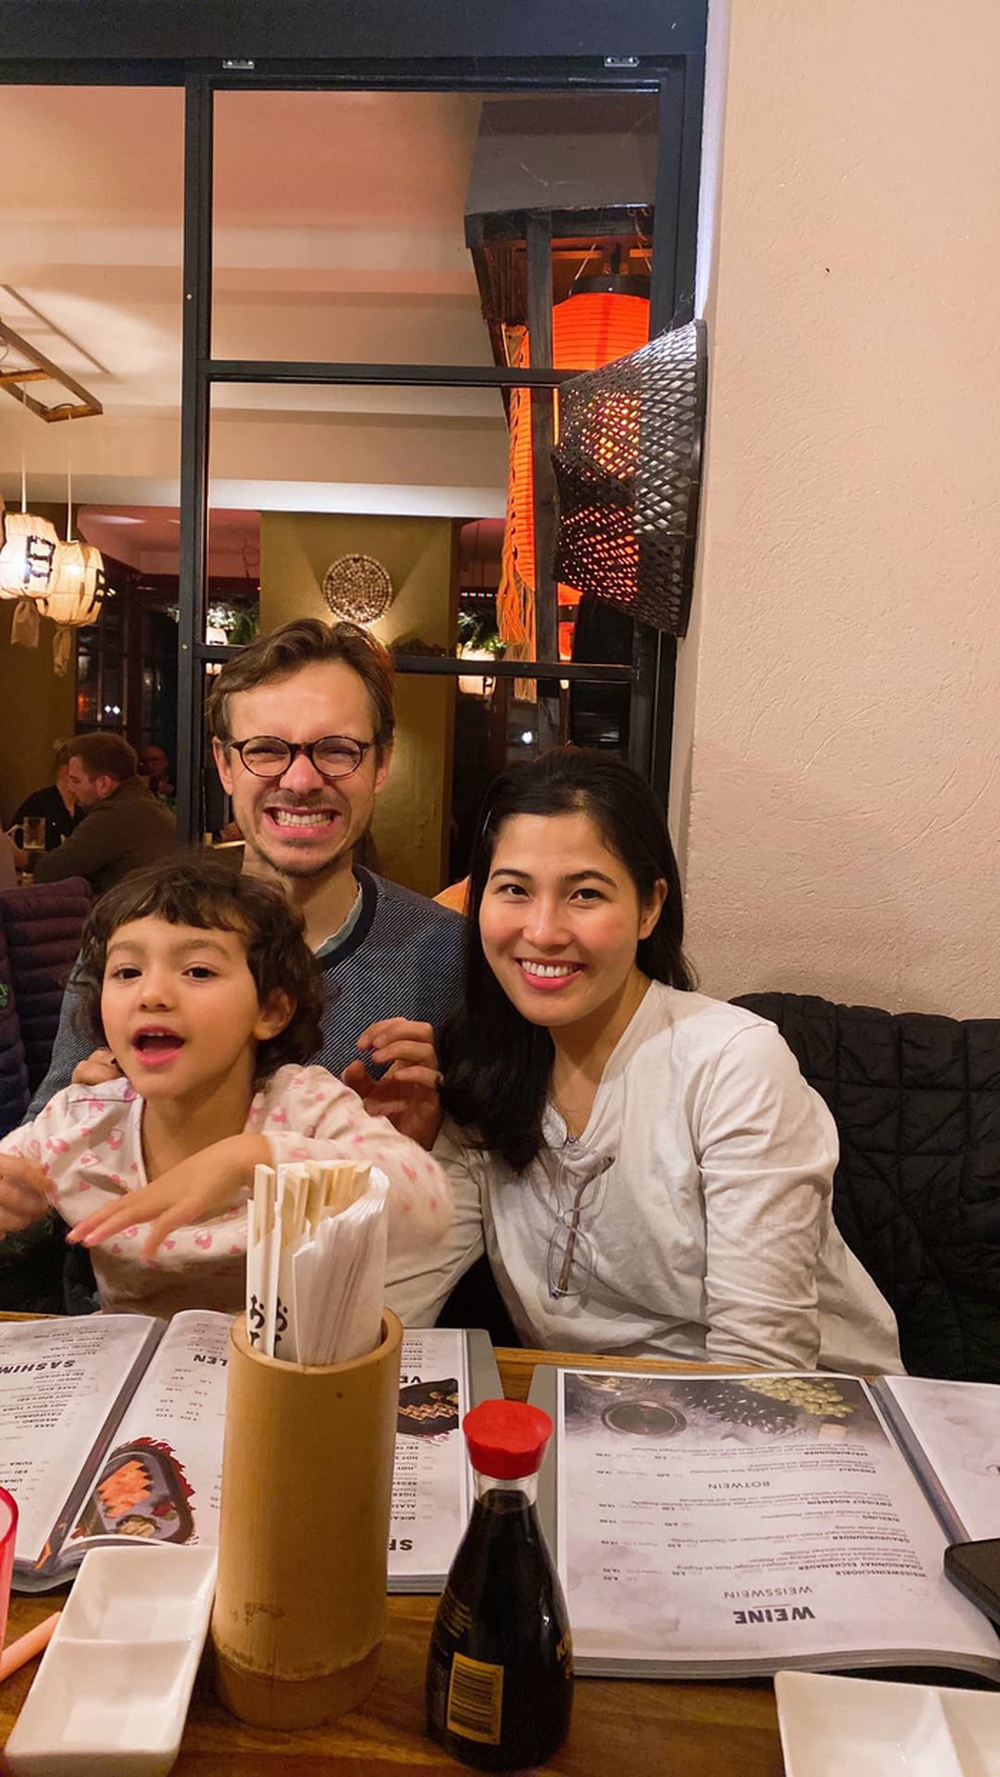 Nàng dâu Việt cưới thầy giáo Đức, gặp được bố mẹ chồng “điểm 10” đáng ngưỡng mộ - ảnh 2